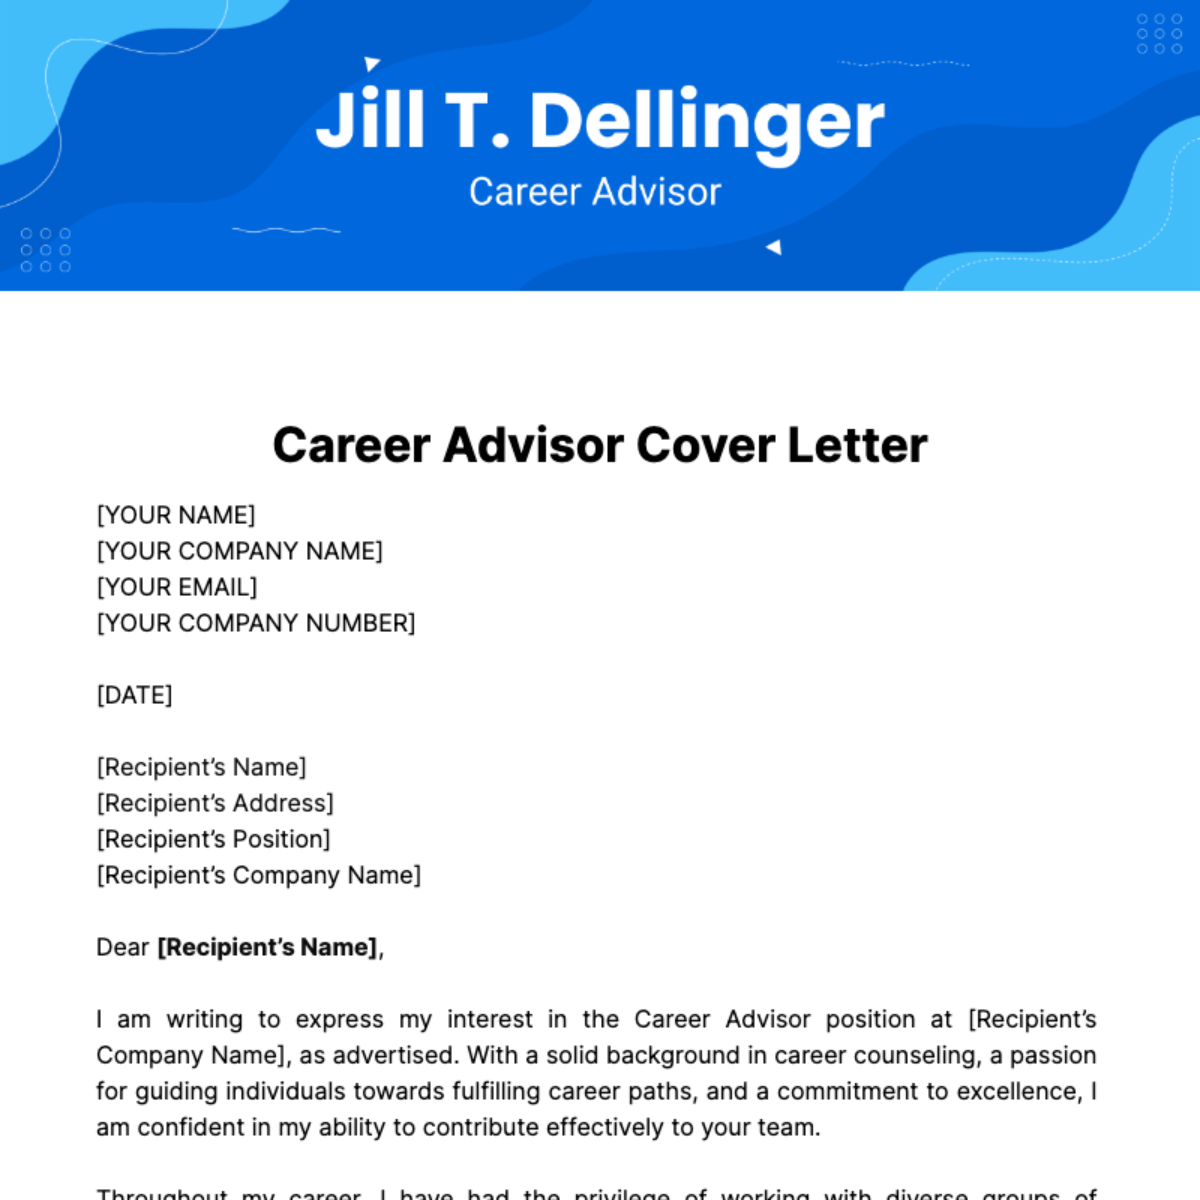 Career Advisor Cover Letter Template